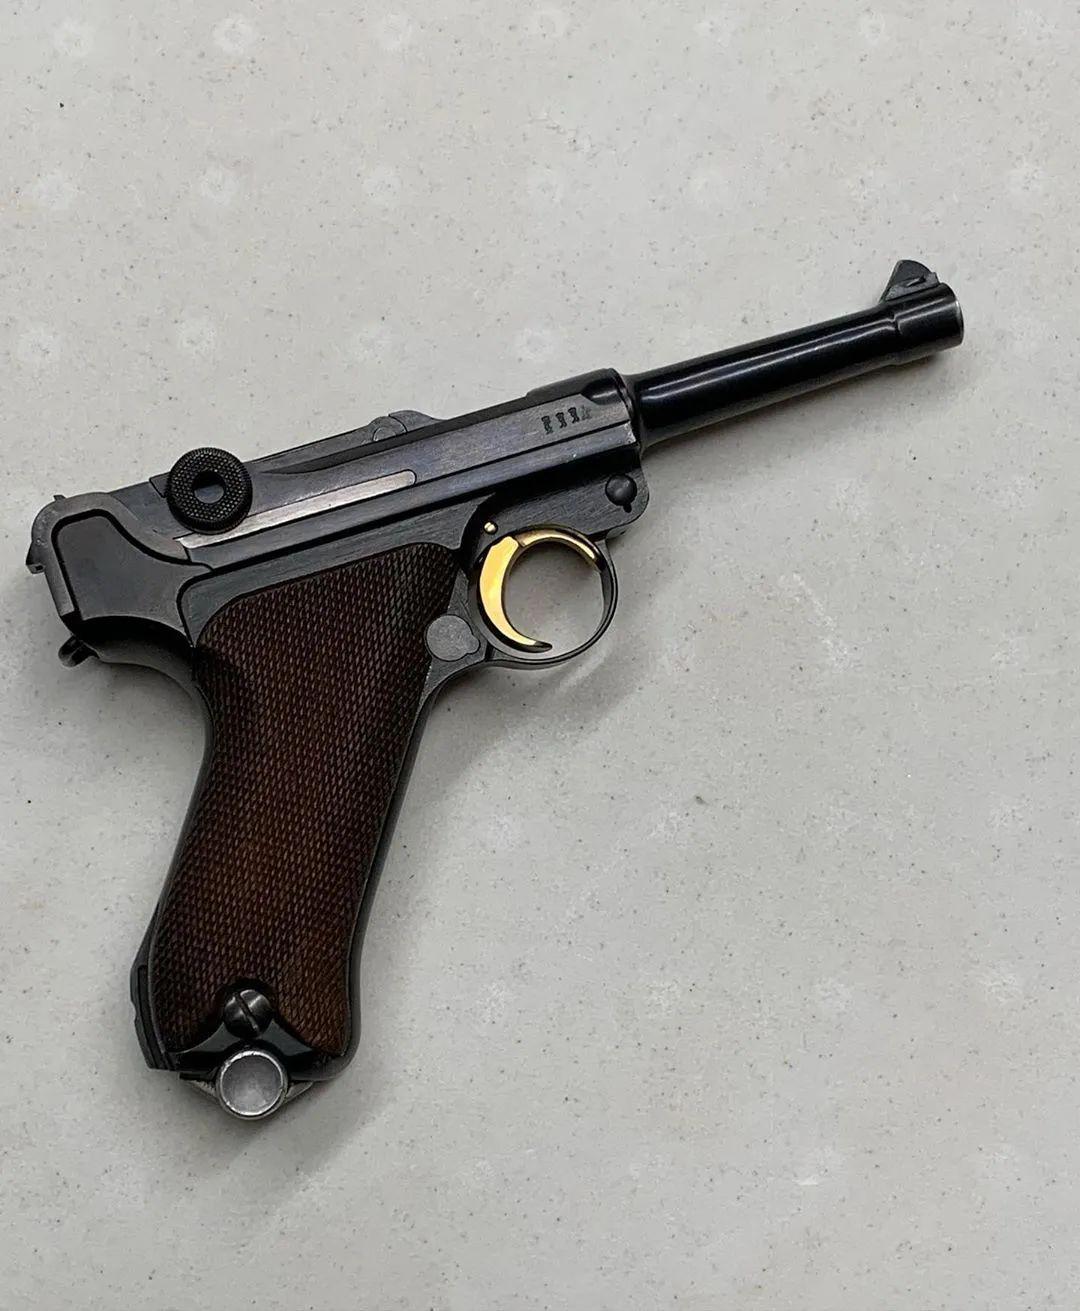 鲁格p08图集二战中最具代表性的手枪之一